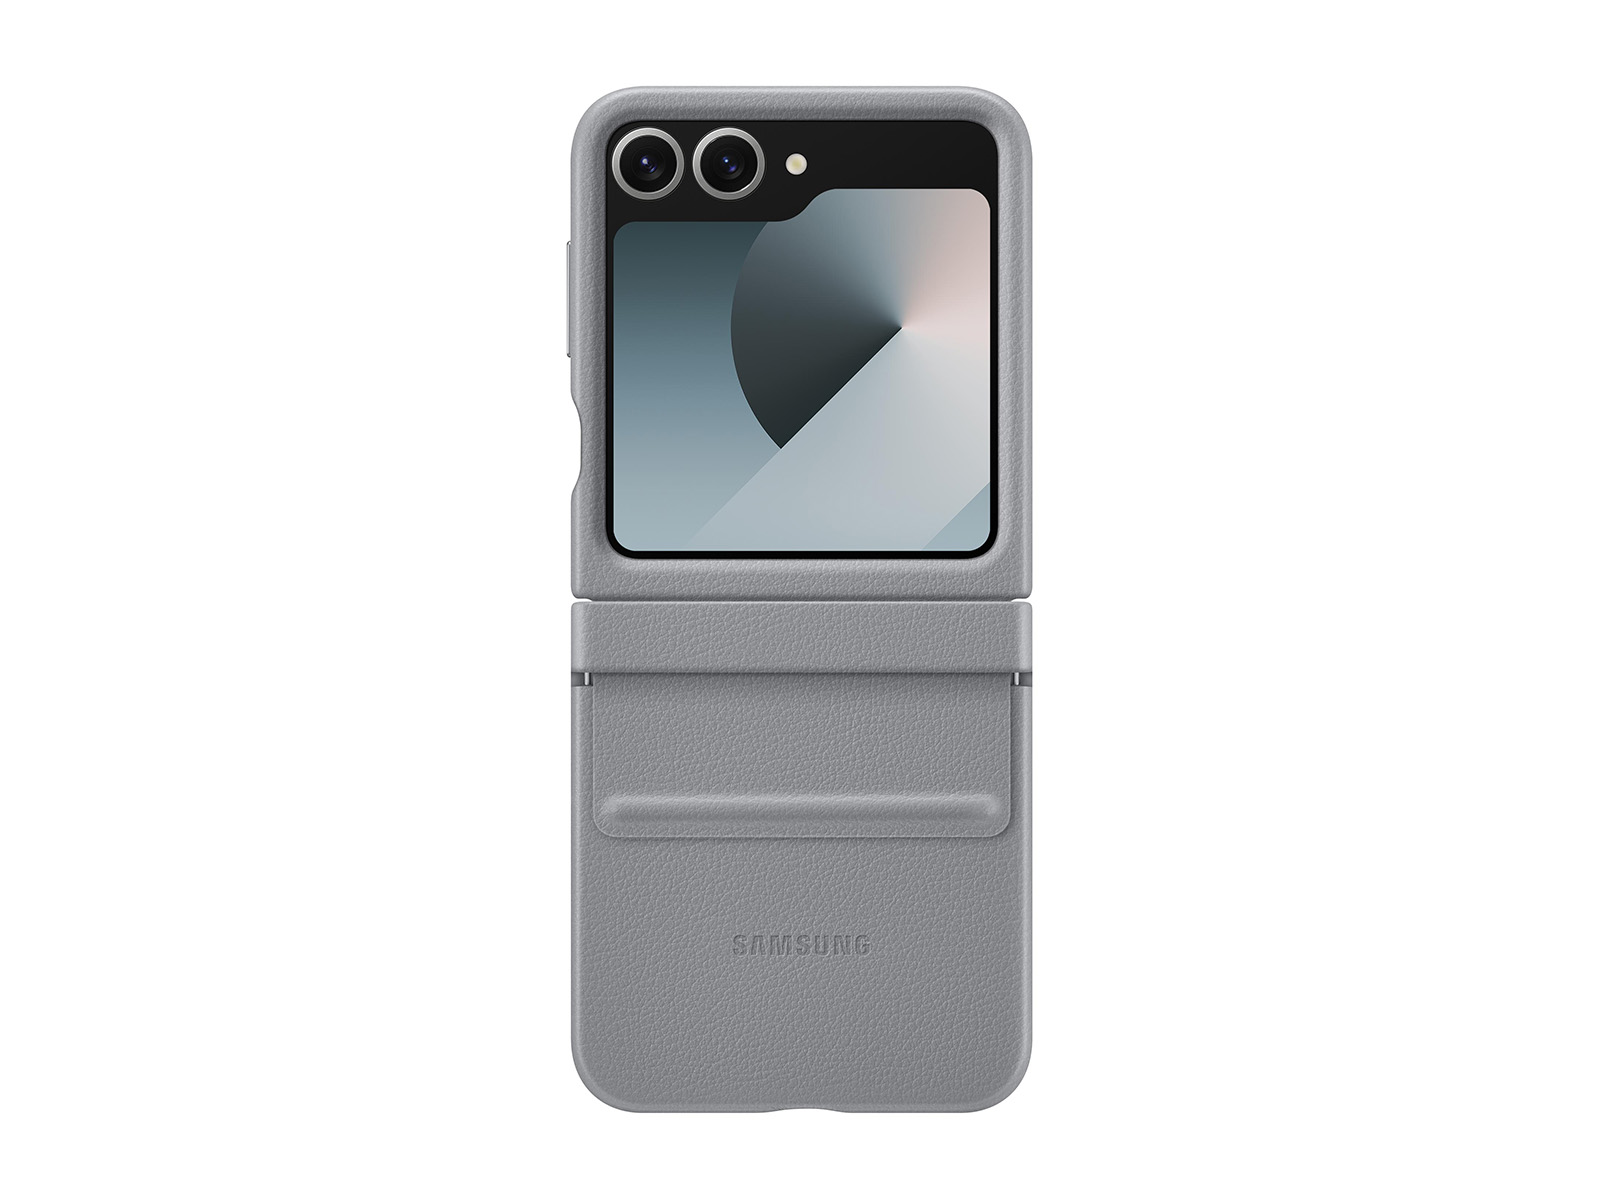 Galaxy Z Flip 6 Kindsuit Case by Samsung